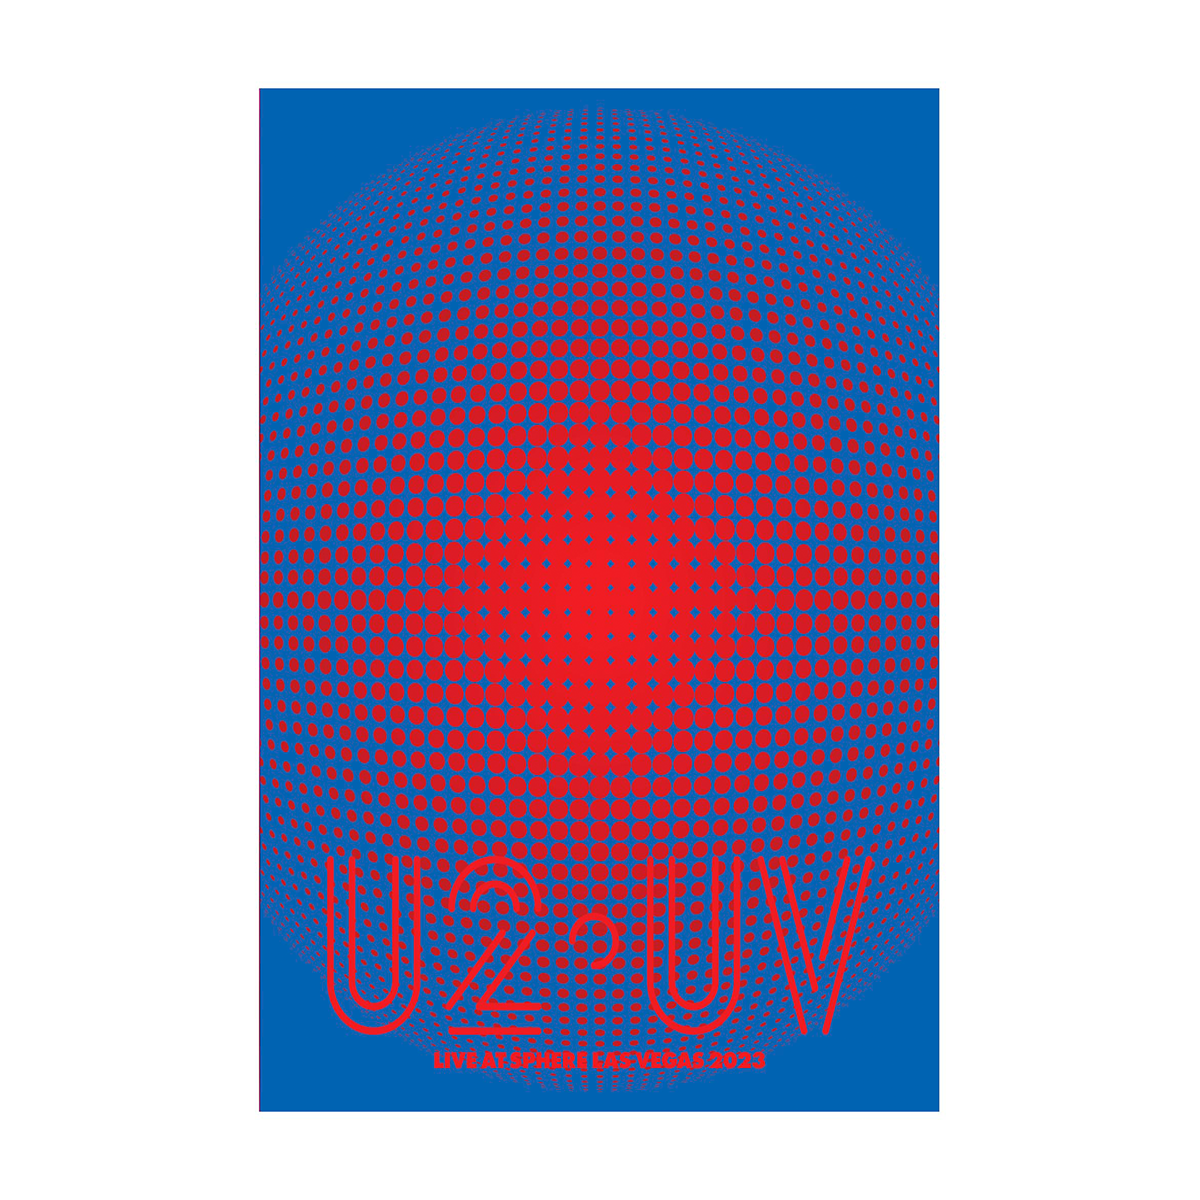 U2 UV Matrix Live At Sphere Poster